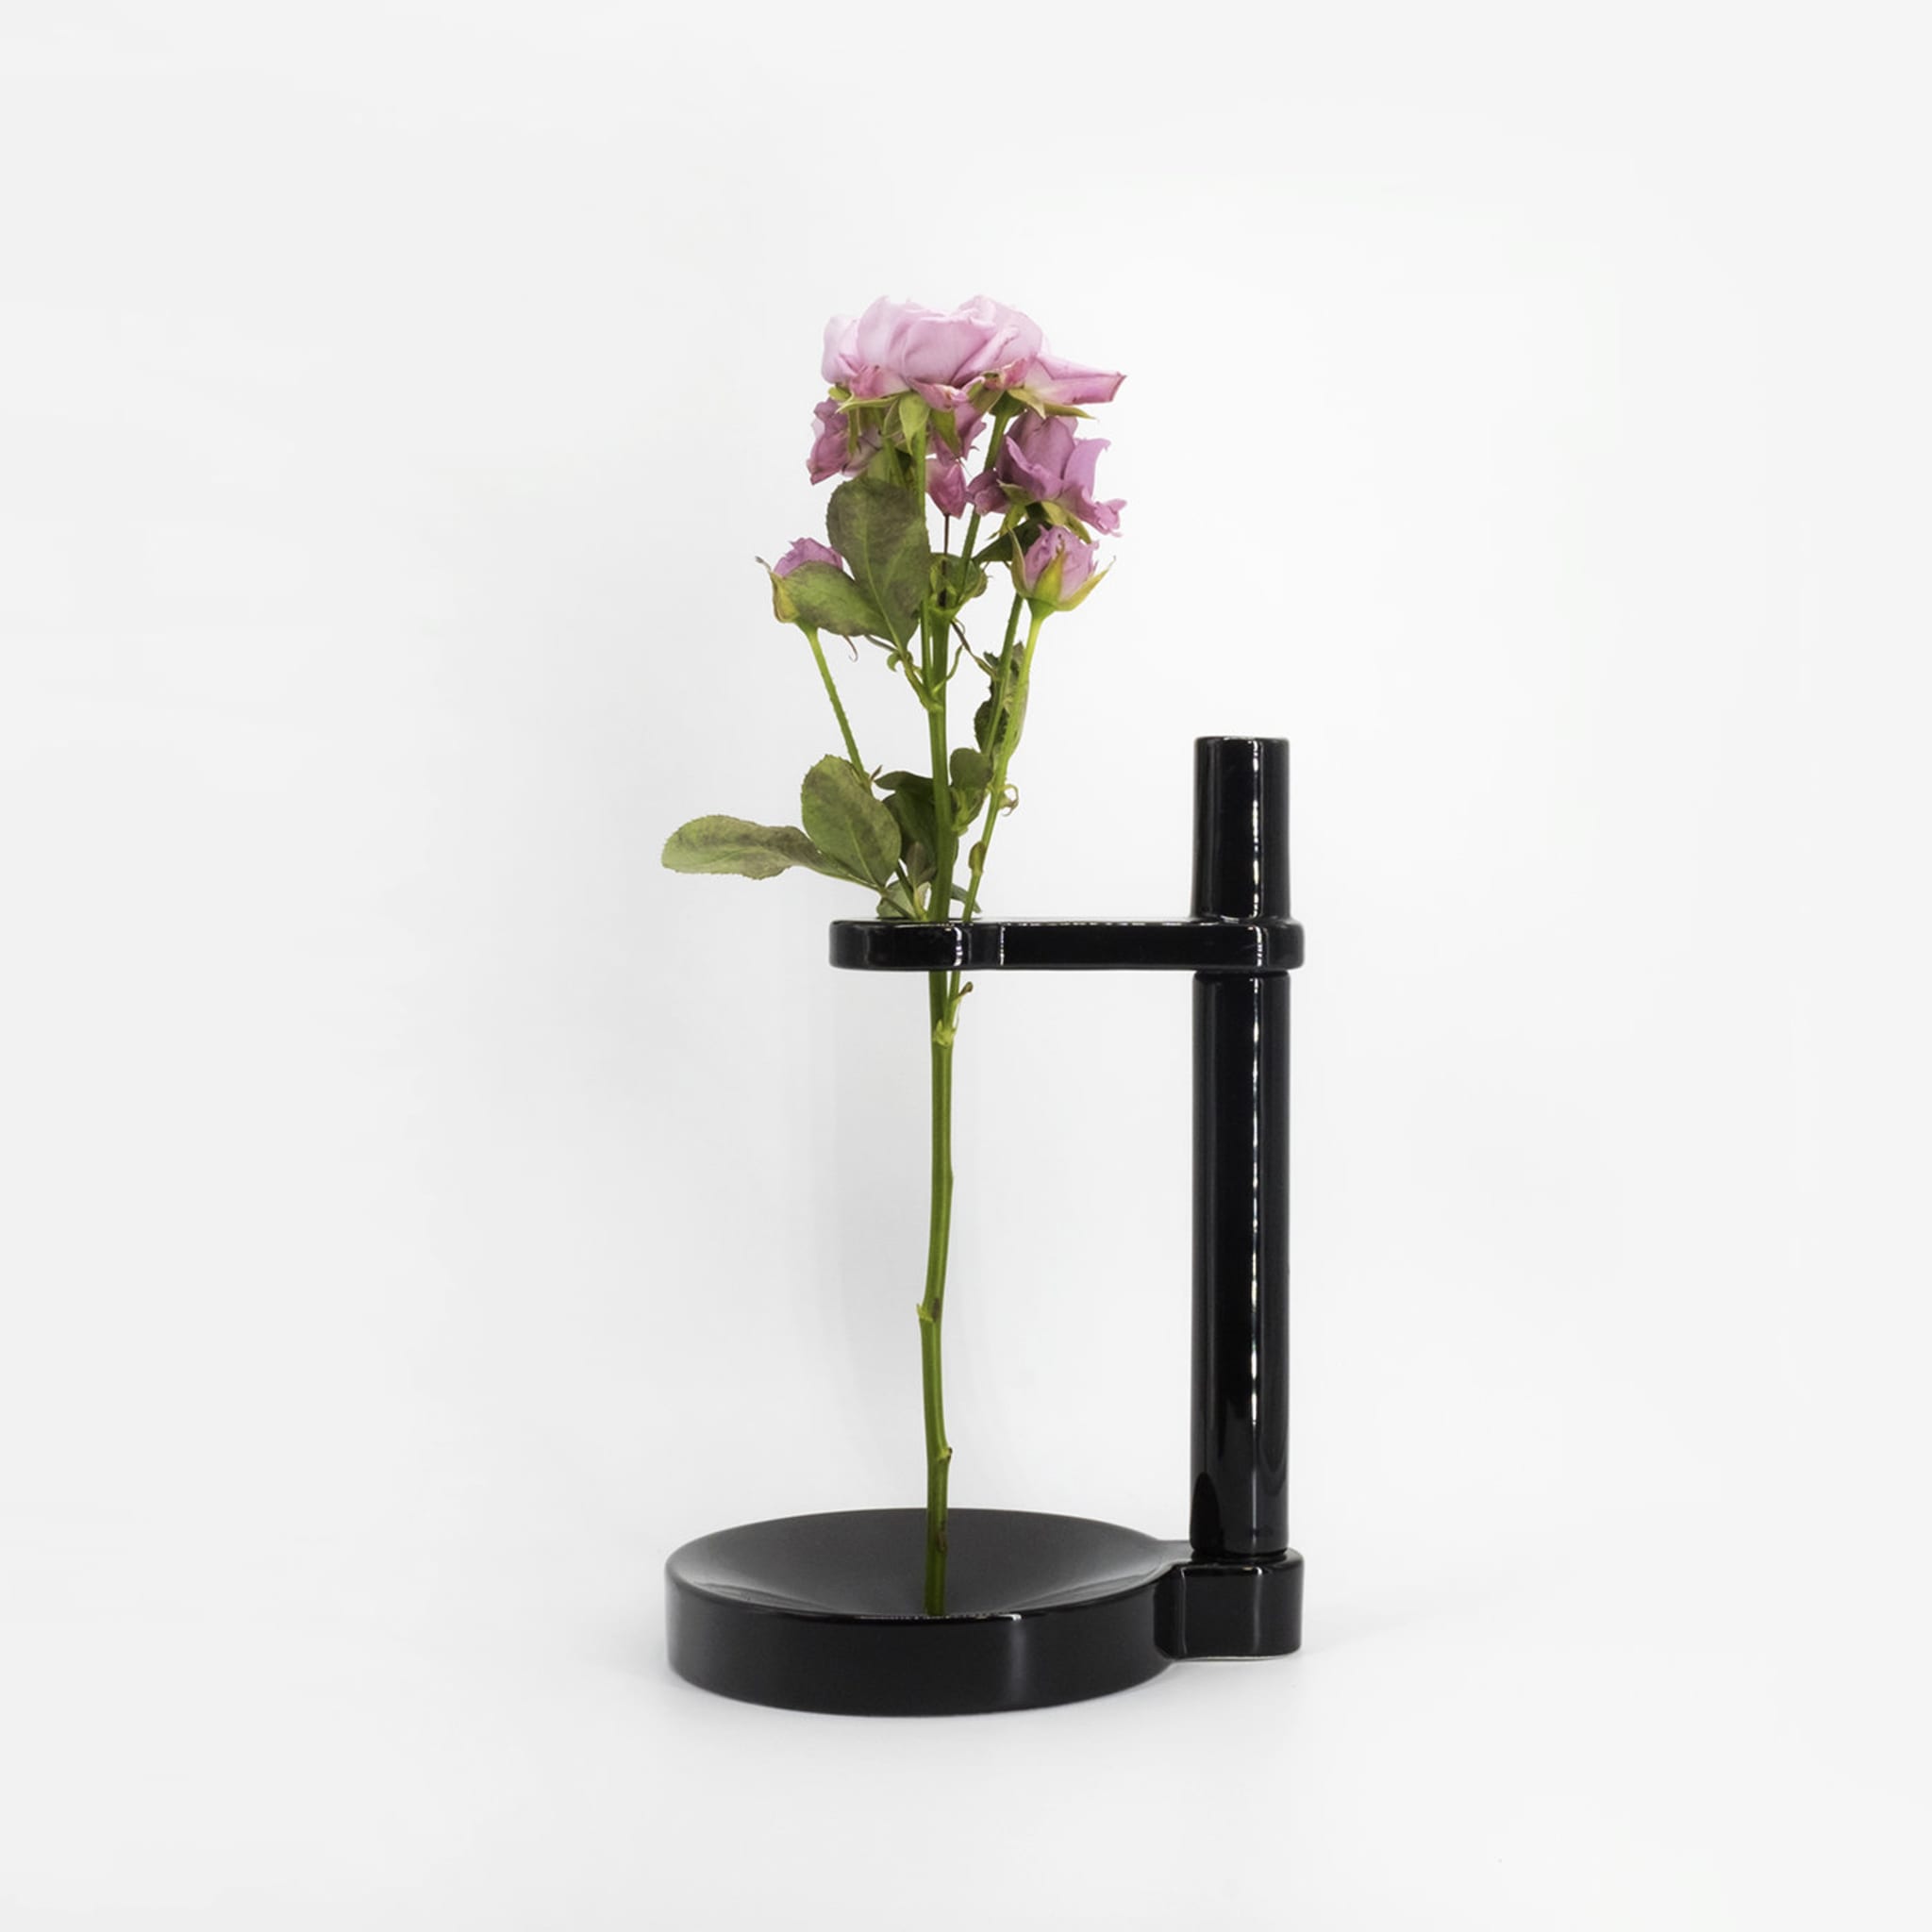 Minimo 1 Black Vase - Alternative view 3